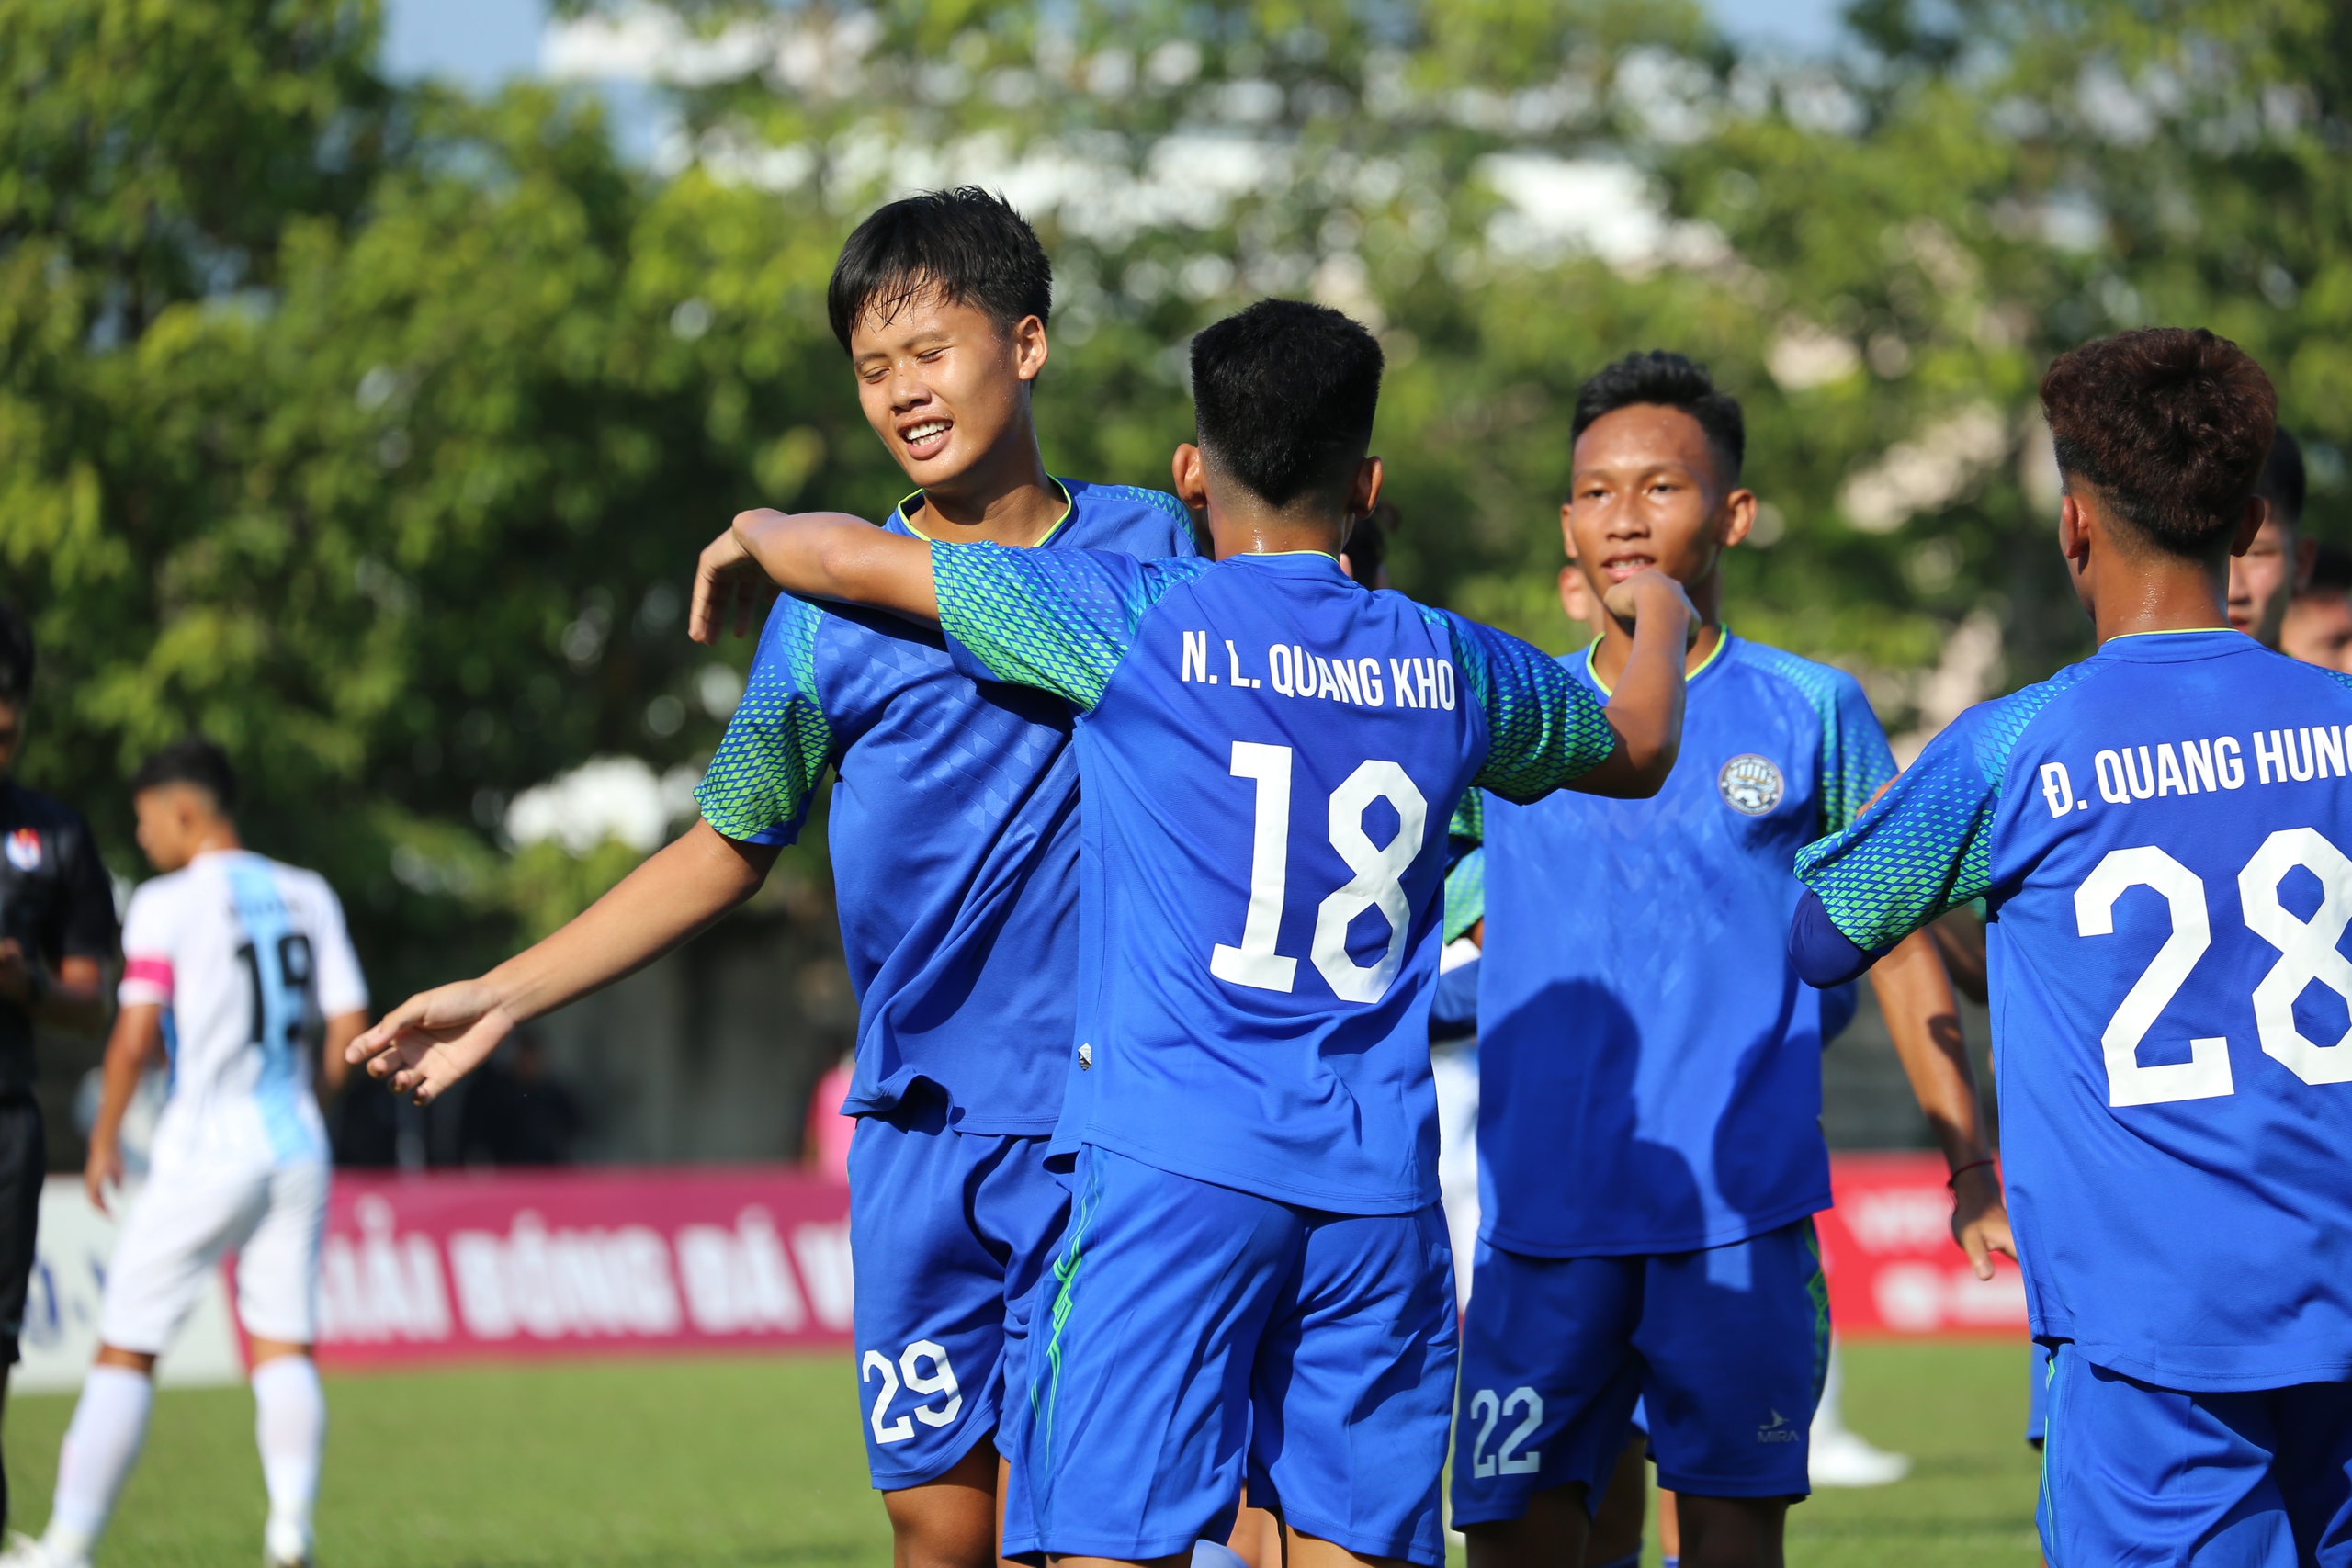 Quang Khôi đang tỏa sáng trong số áo 18 của đội U.17 Bà Rịa - Vũng Tàu